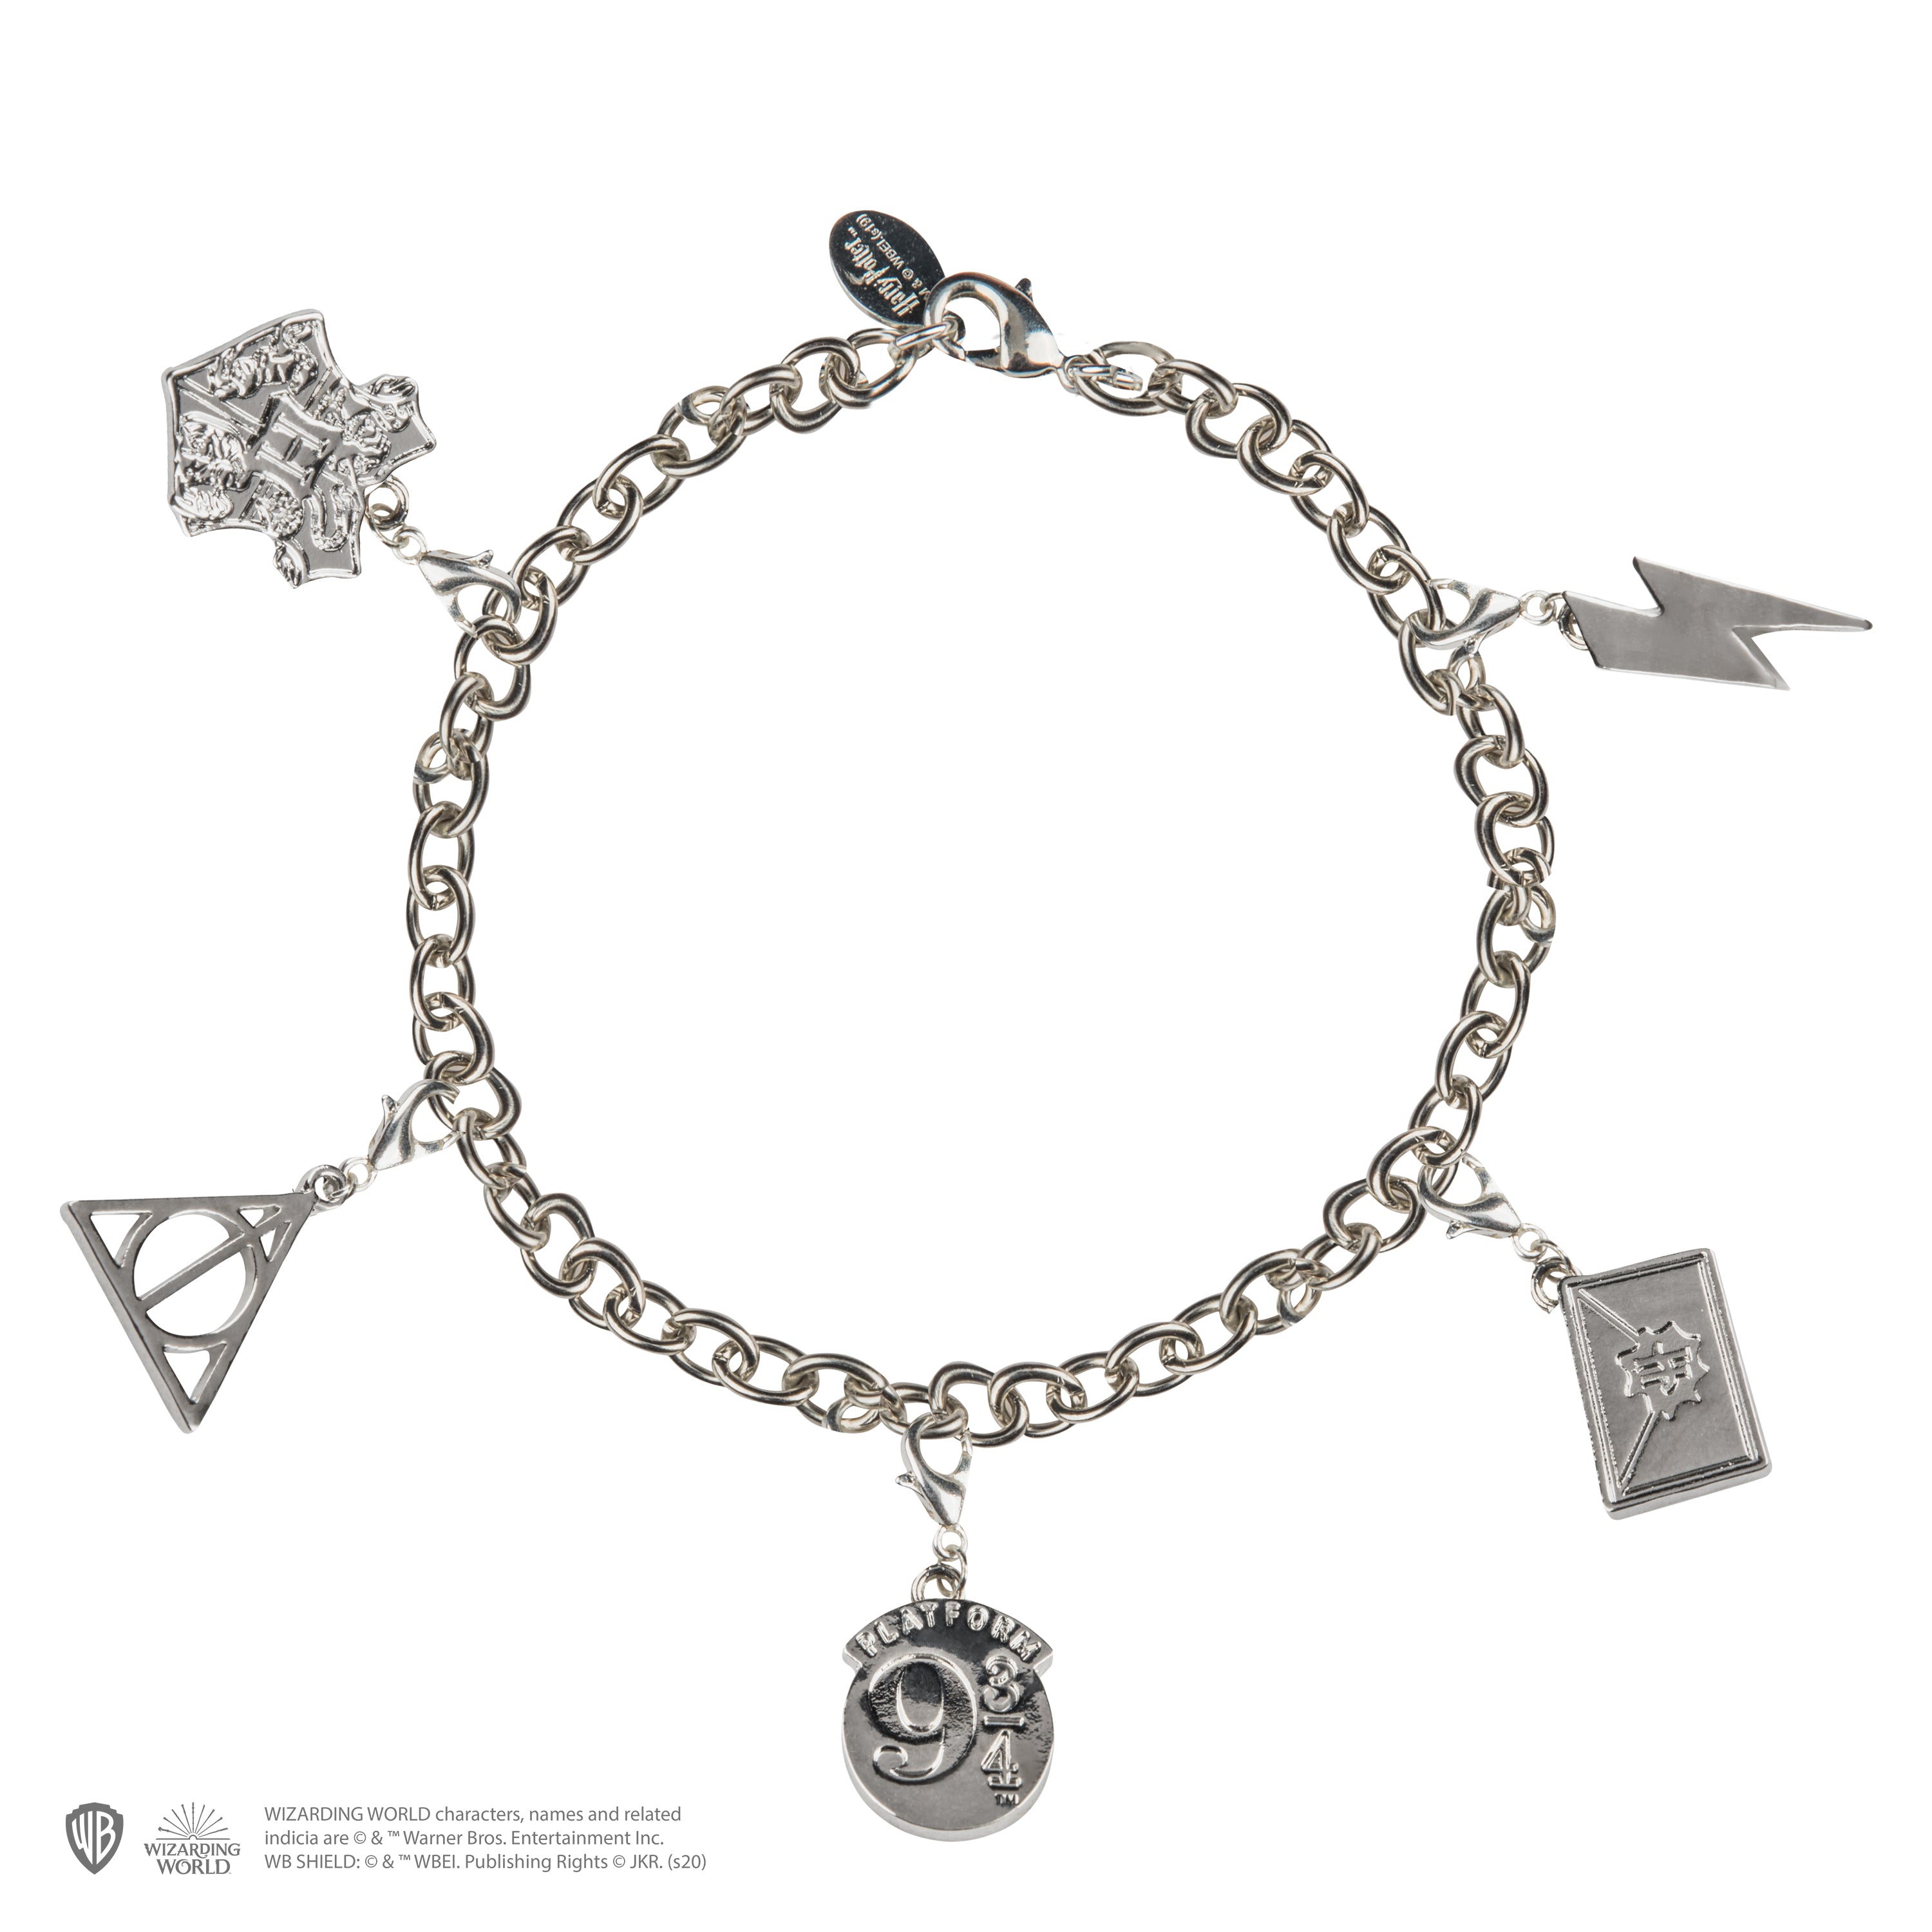 Hogwarts House Bracelets // Deathly Hallows Bracelets // Harry Potter  Bracelets 